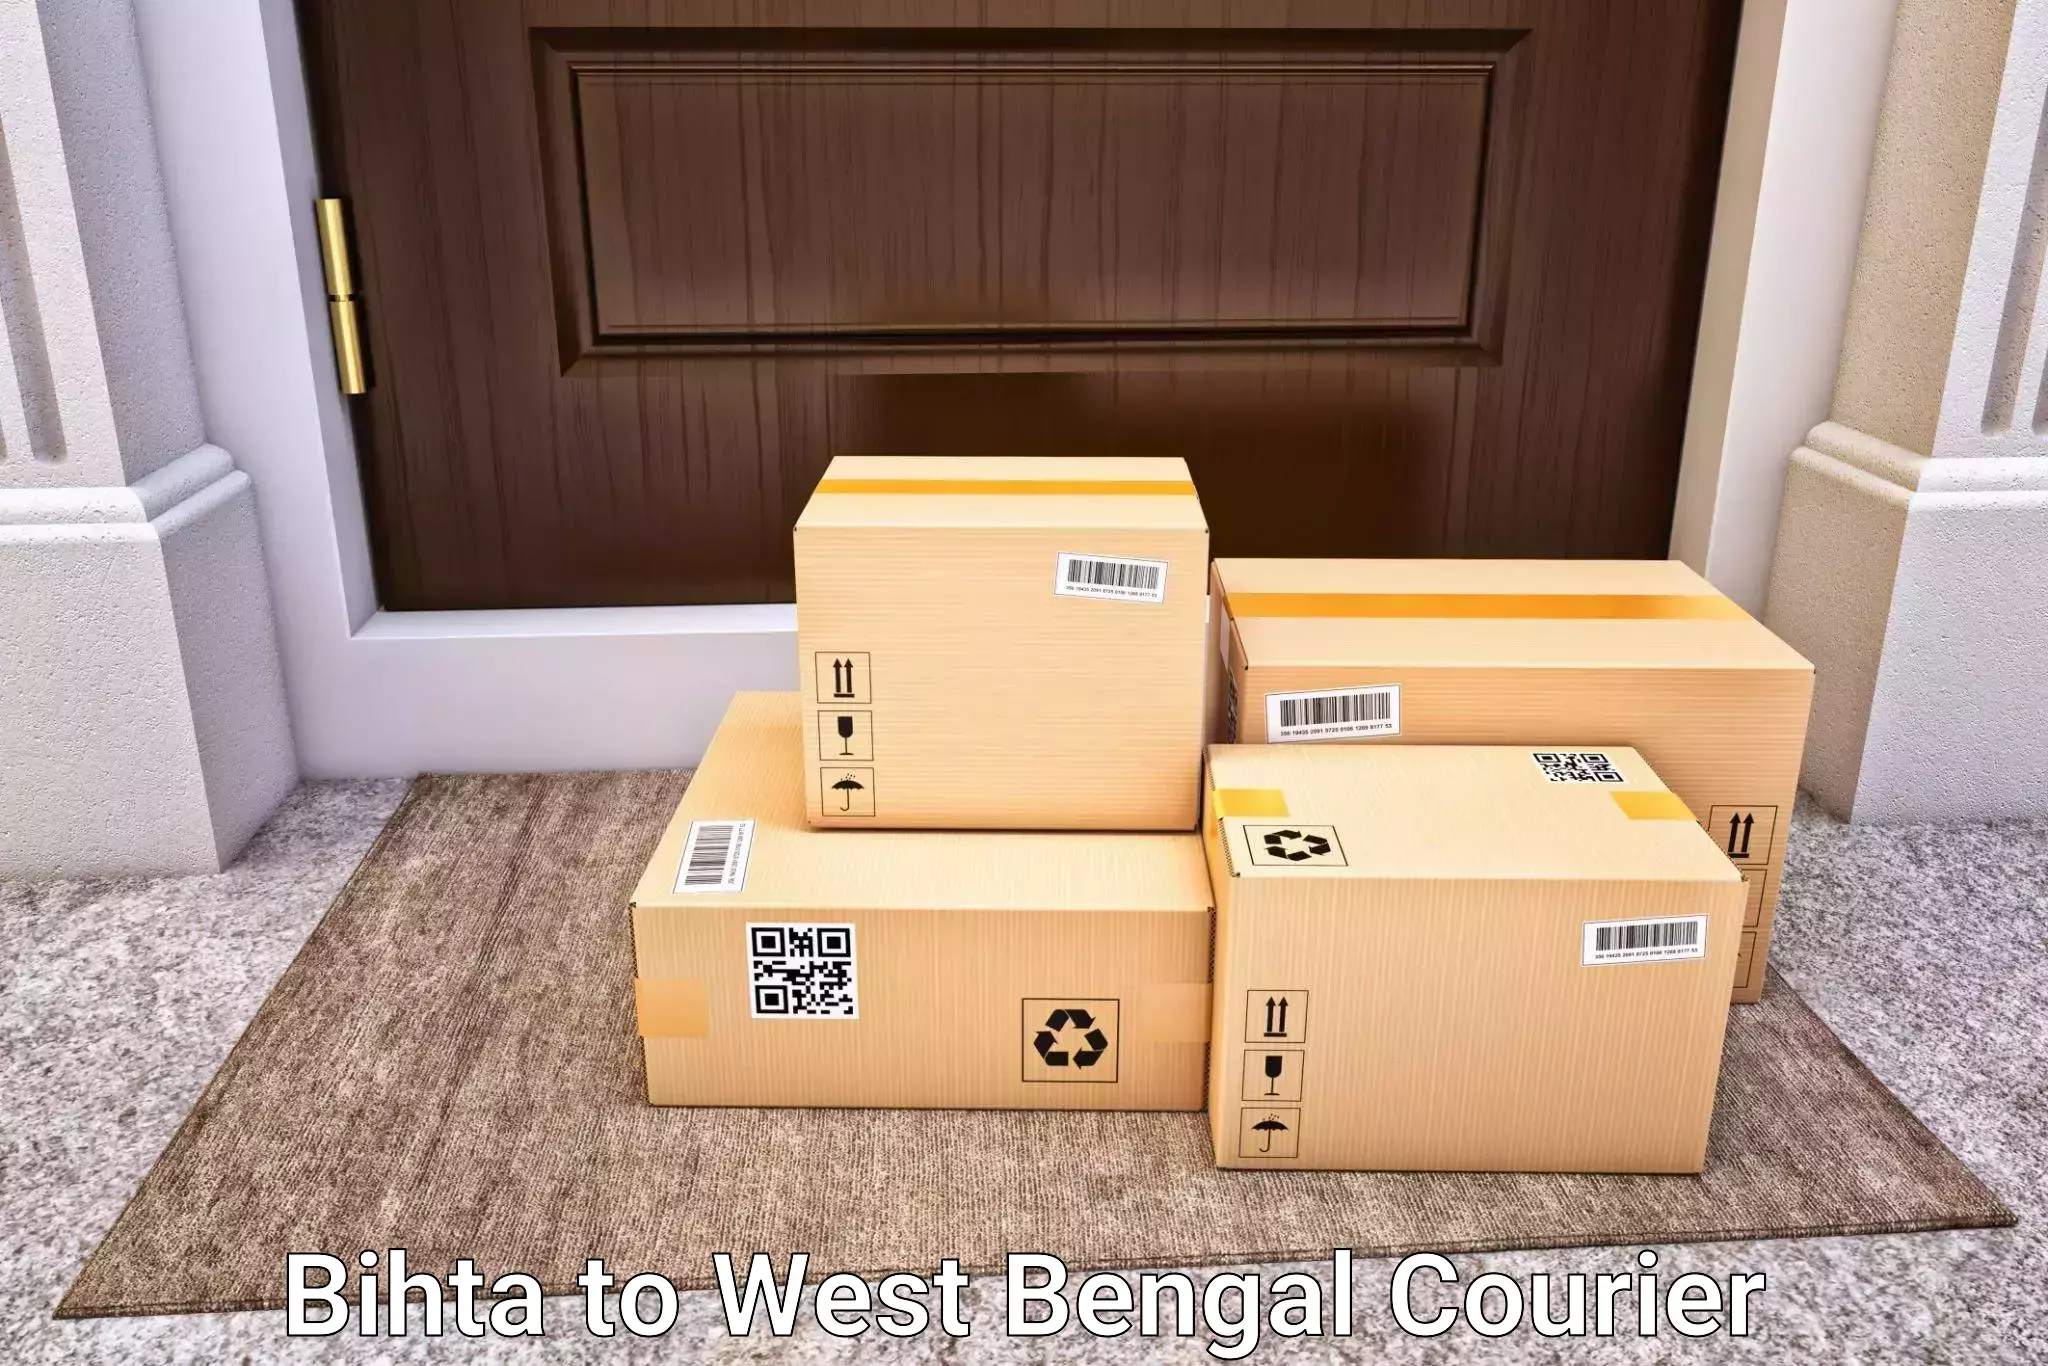 Luggage delivery estimate in Bihta to Mathabhanga